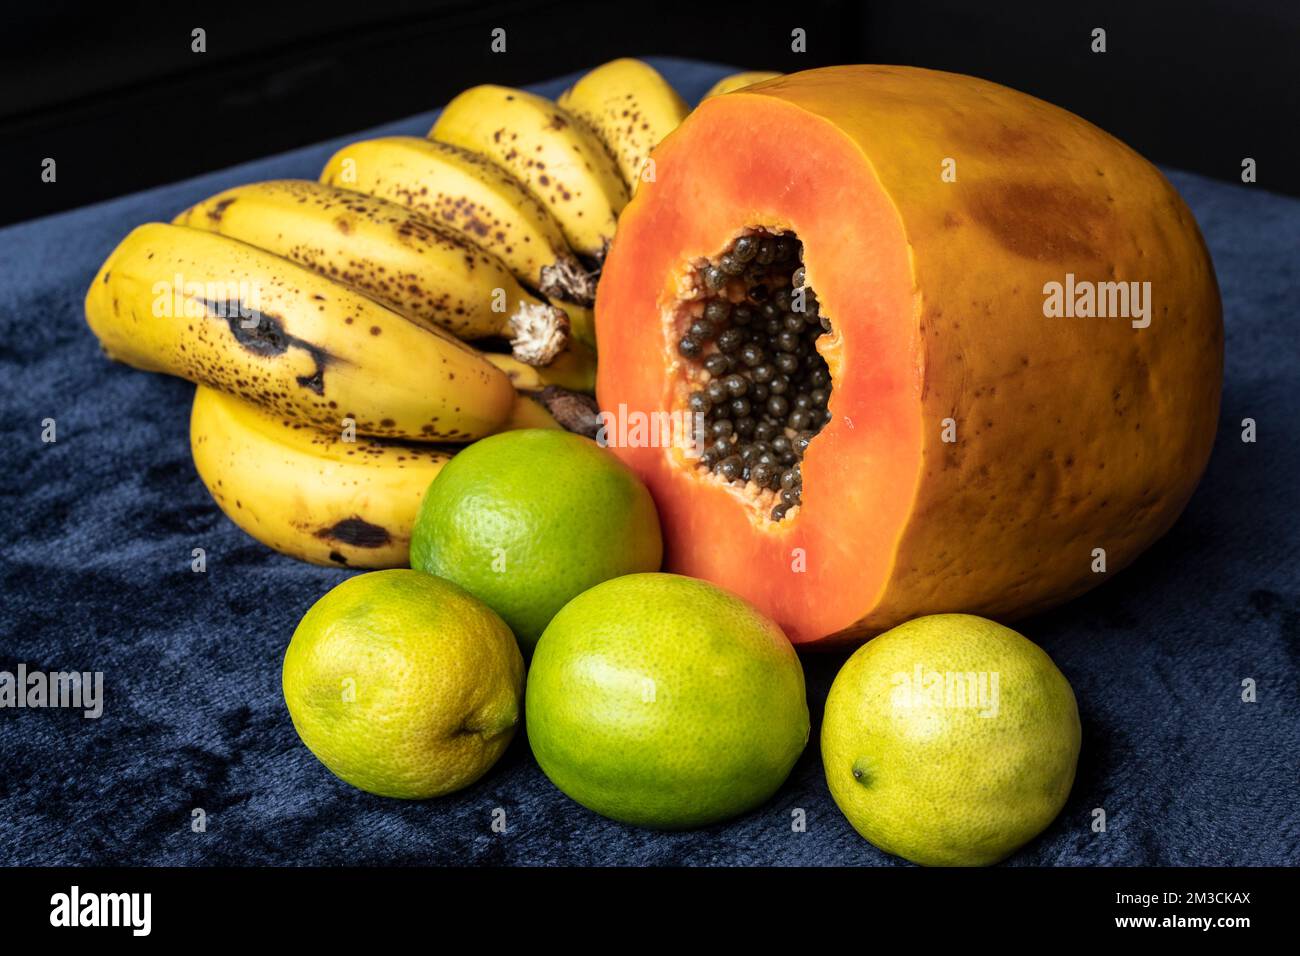 Aus nächster Nähe sehen Sie eine frisch geschnittene Orangenpapaya mit Samen im Inneren, eine Sommersprosse Bananen und drei grüne Zitronen auf blauem marineblauem und schwarzem Hintergrund. F Stockfoto